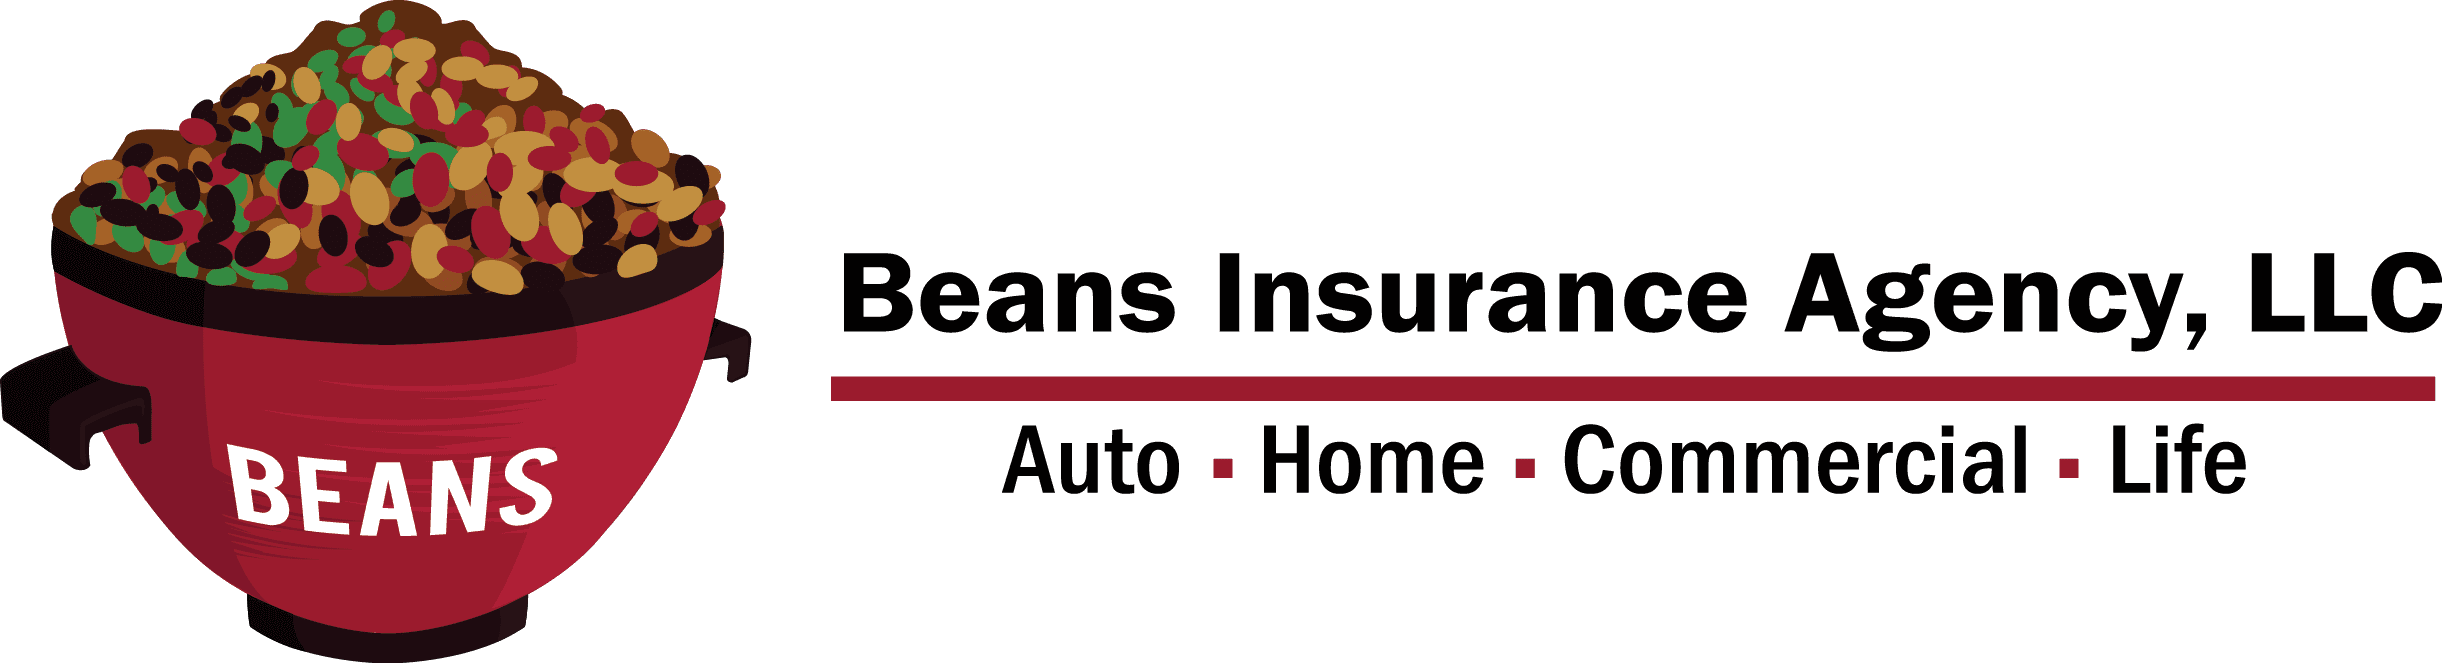 Beans Insurance Agency, LLC